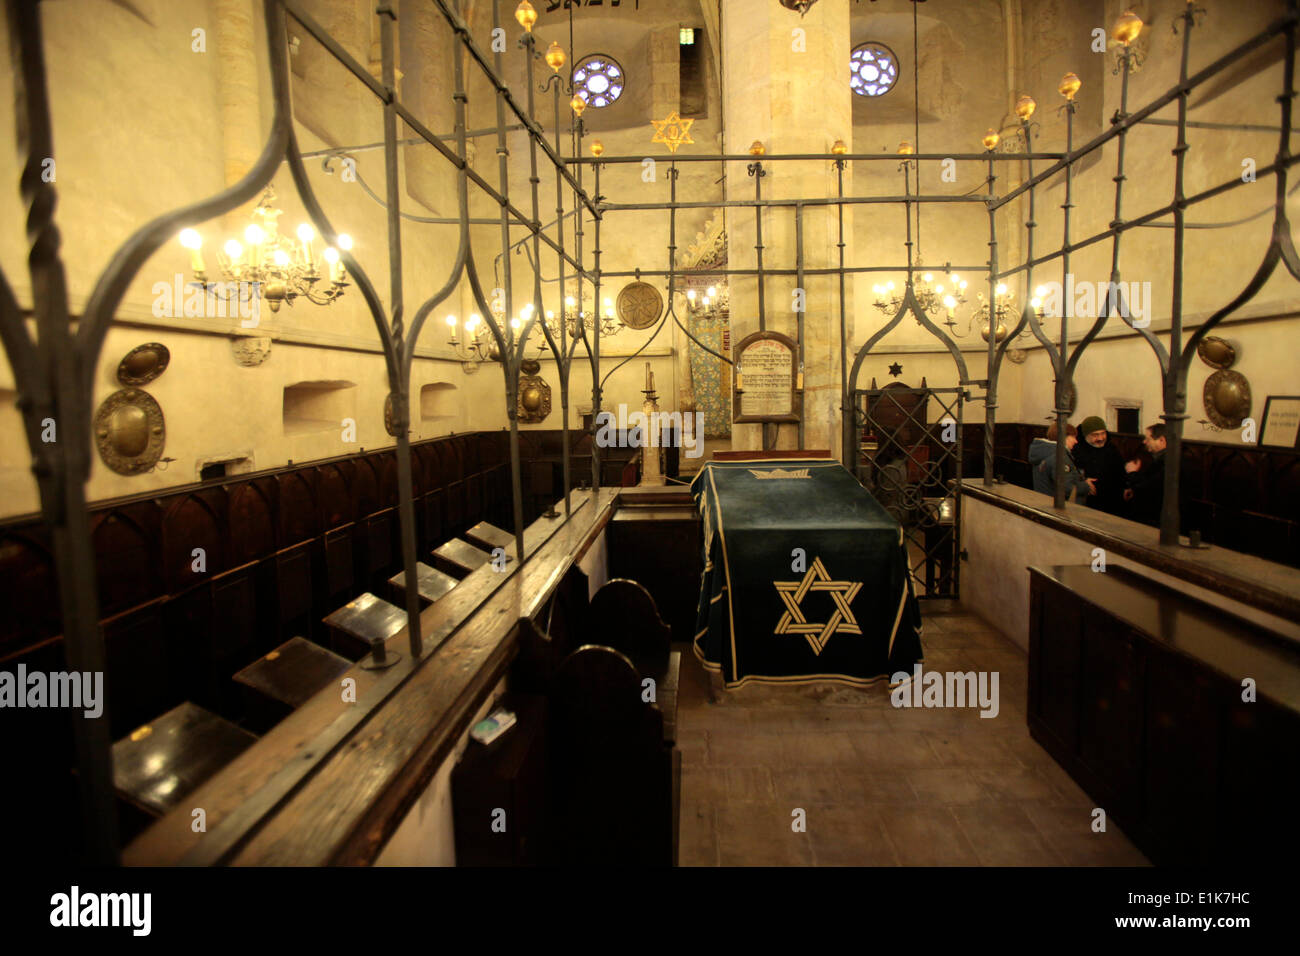 Das Innere der Altneu-Synagoge, die älteste Synagoge in Europa, gebaut um 1270. Stockfoto